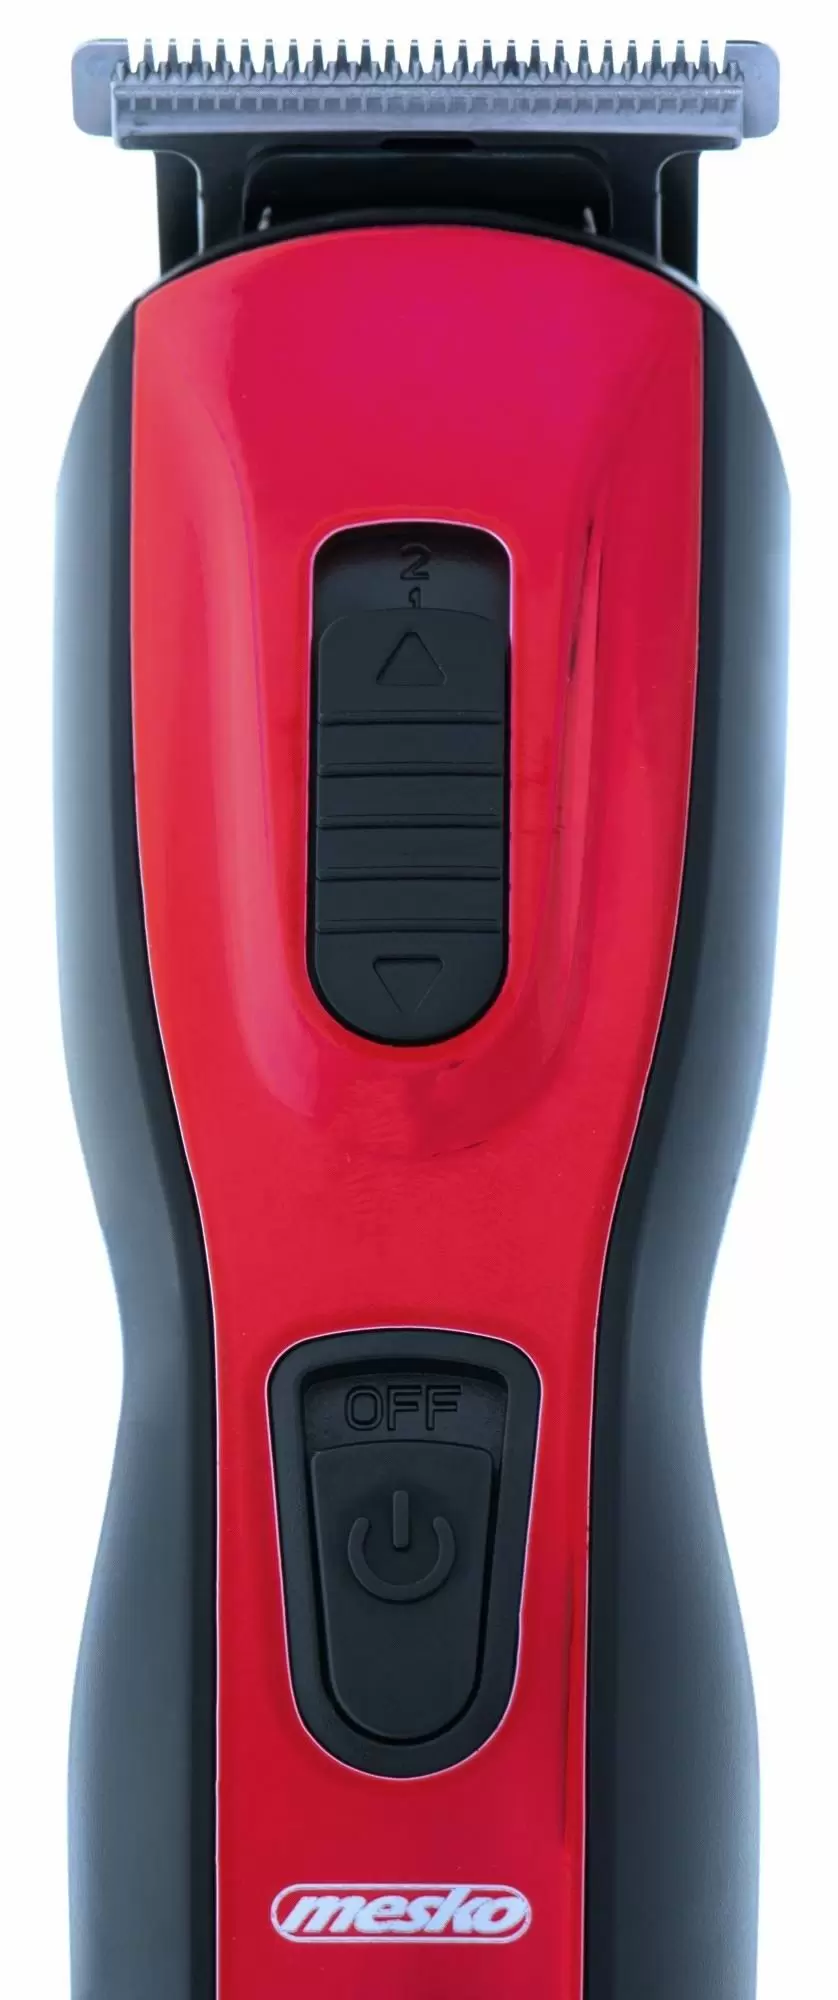 Машинка для стрижки волос Mesko MS-2931, красный